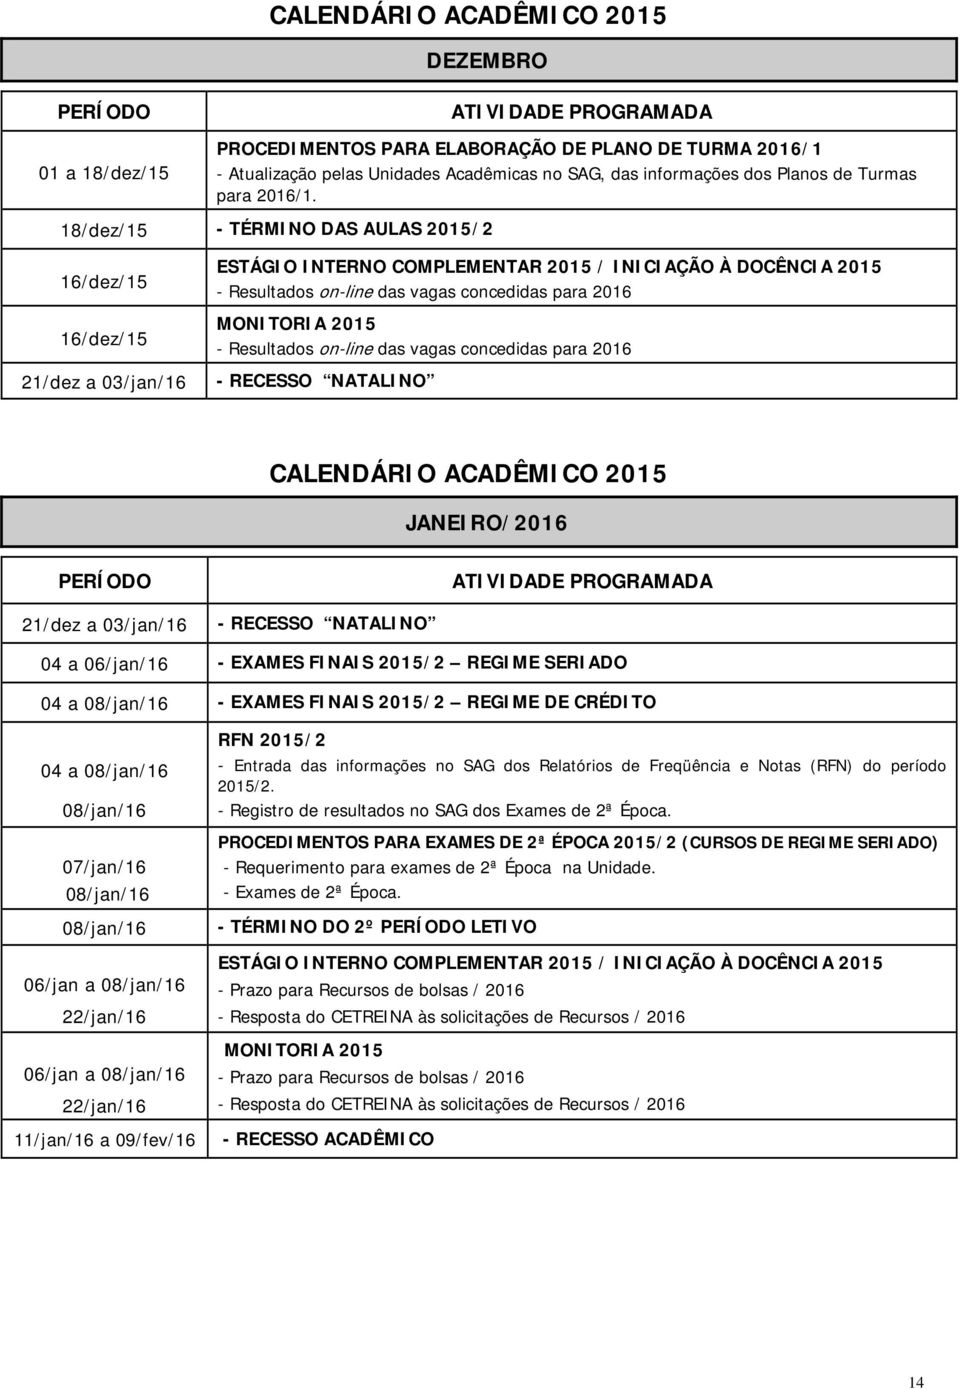 Resultados on-line das vagas concedidas para 2016 - RECESSO NATALINO CALENDÁRIO ACADÊMICO 2015 JANEIRO/2016 21/dez a 03/jan/16 - RECESSO NATALINO 04 a 06/jan/16 - EXAMES FINAIS 2015/2 REGIME SERIADO